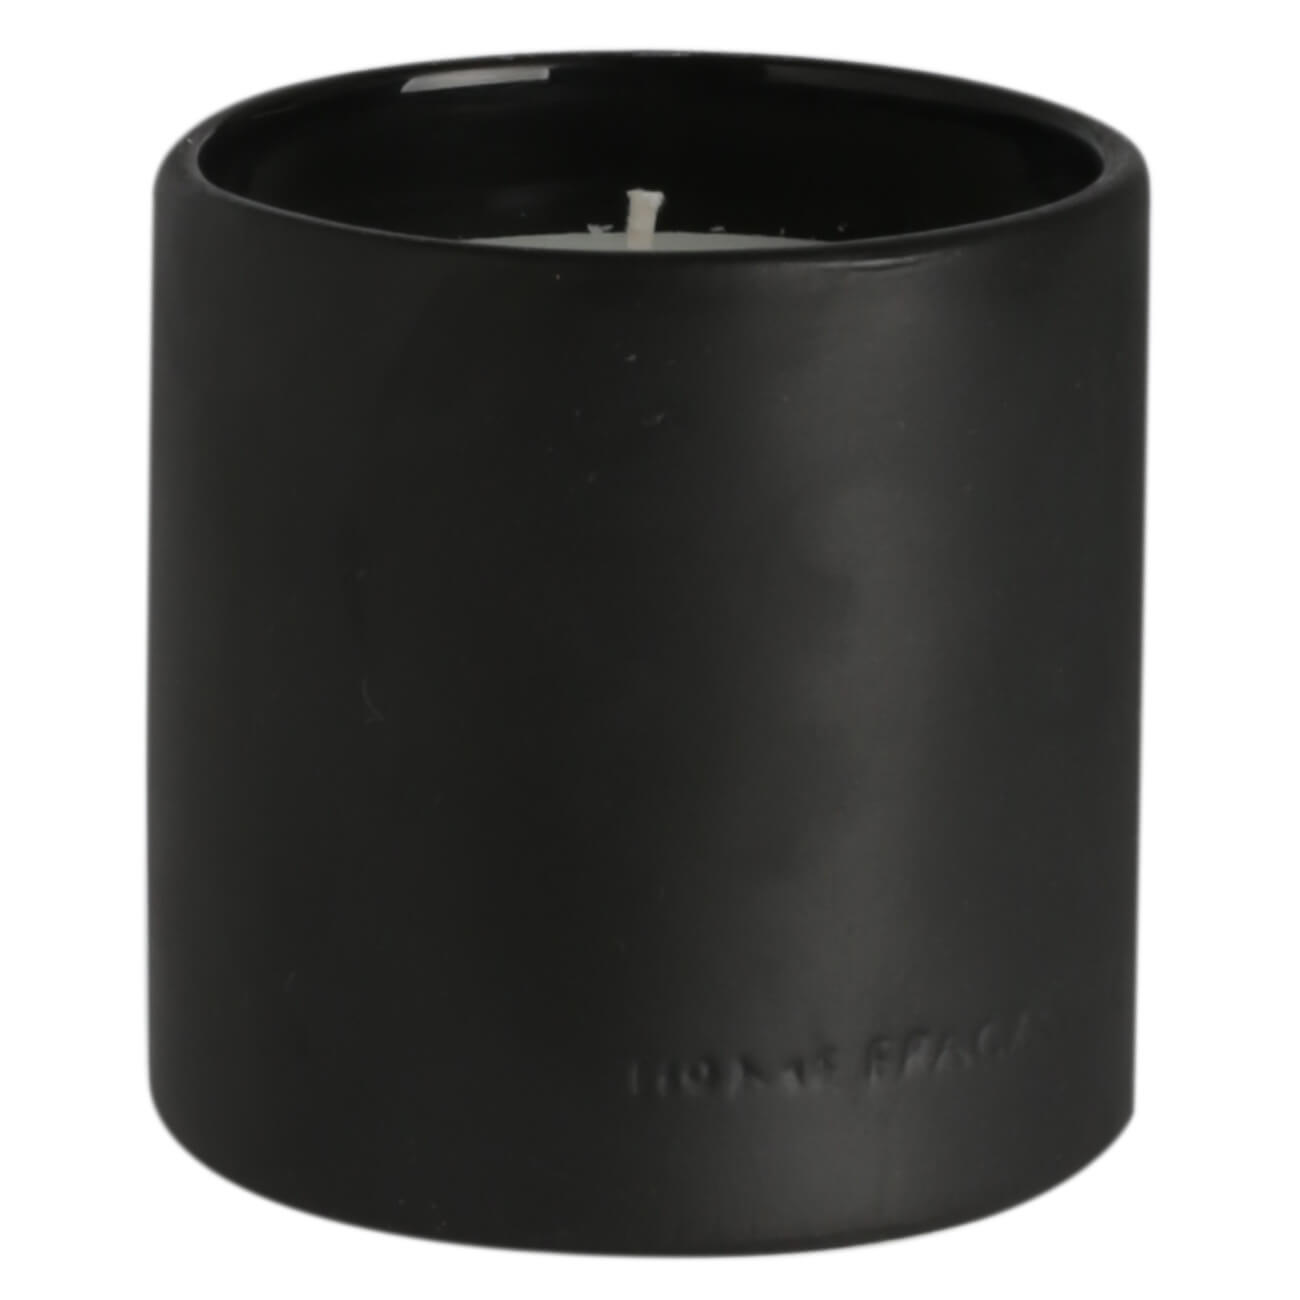 Kuchenland Свеча ароматическая, 9 см, в подсвечнике, керамика, черная, Black forest, B&W ароматическая свеча вещицы